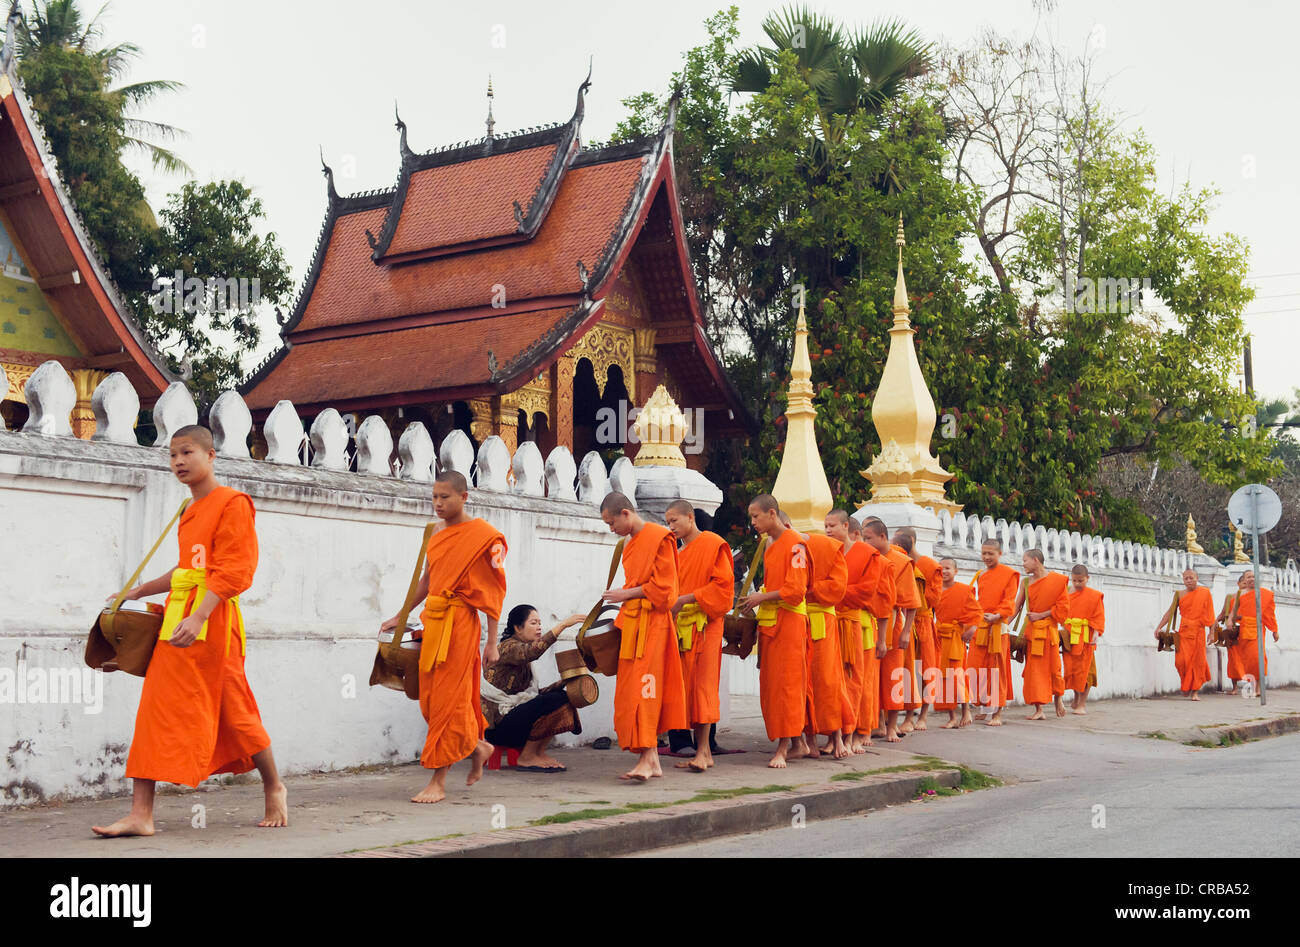 Mönche auf ihre Morgen Almosen rund, Luang Prabang, Laos, Indochina, Asien Stockfoto